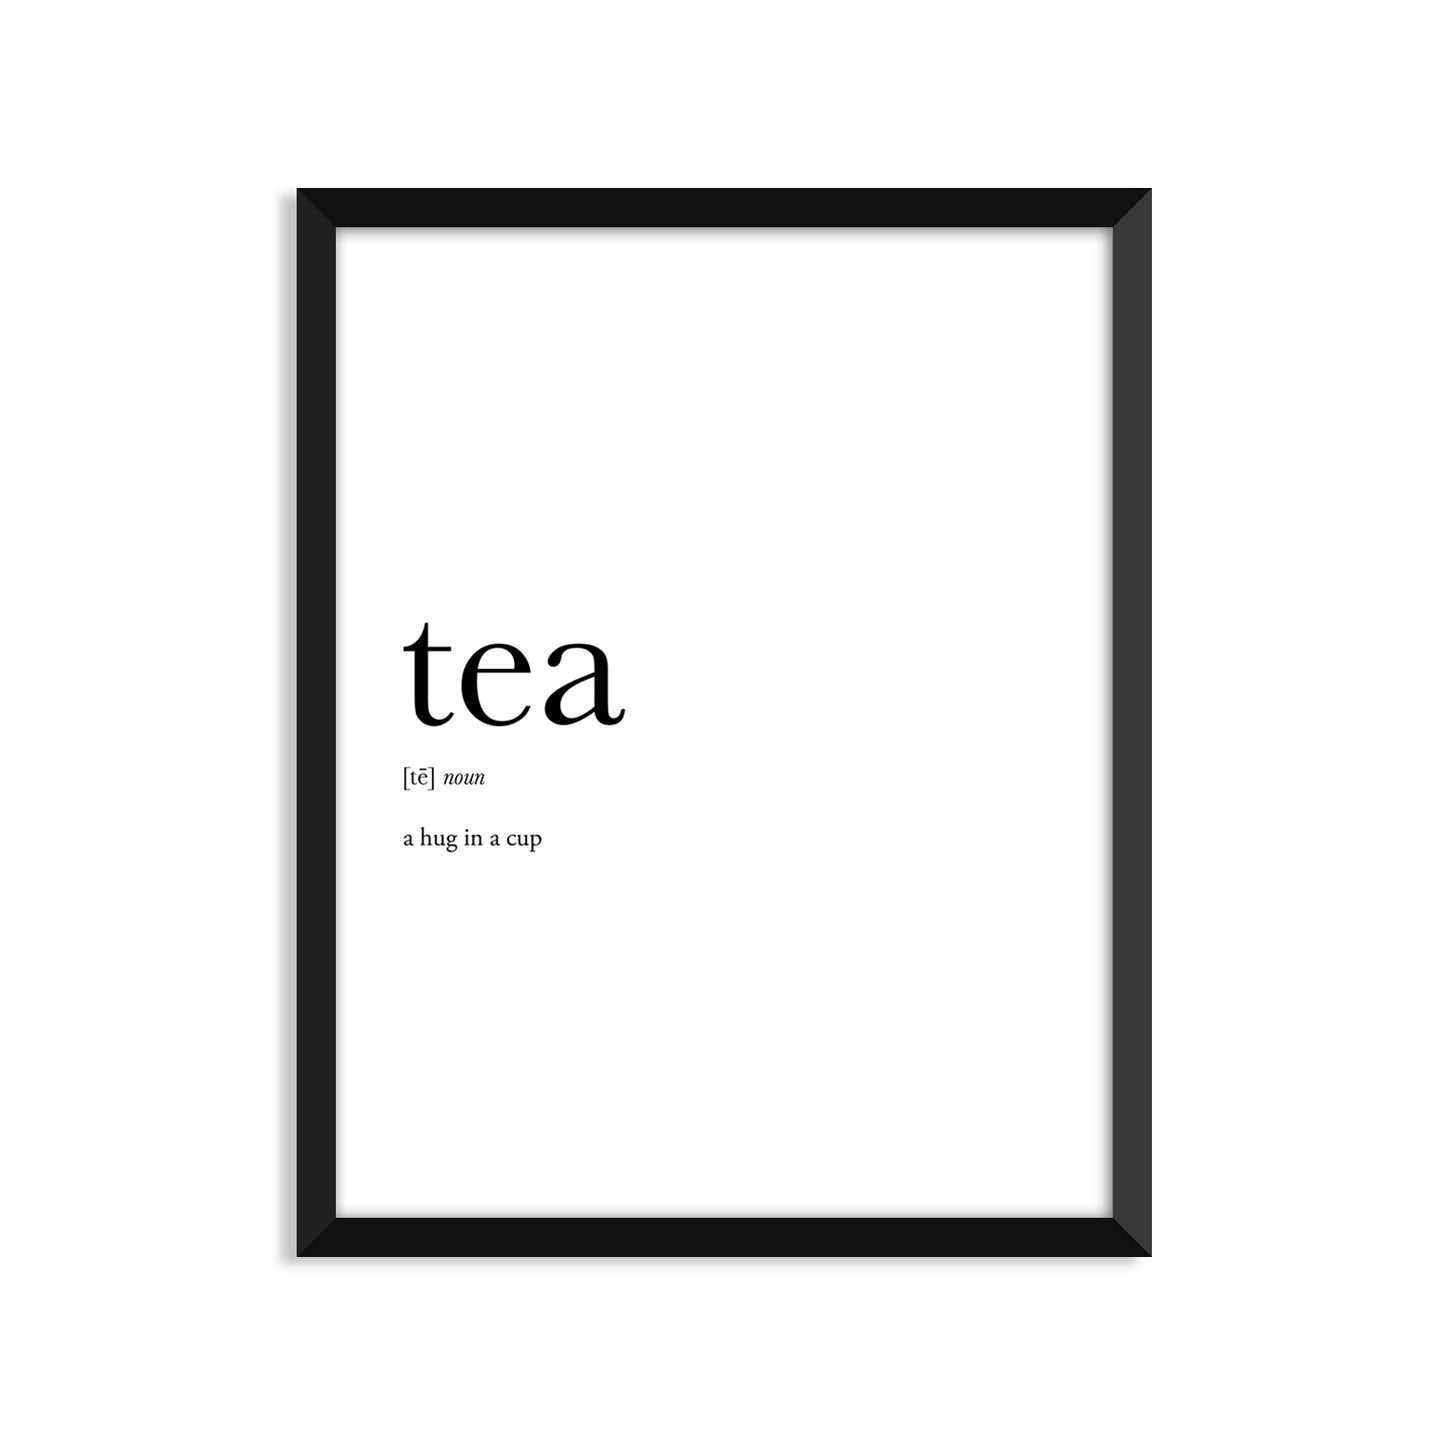 Tea Definition Everyday Card